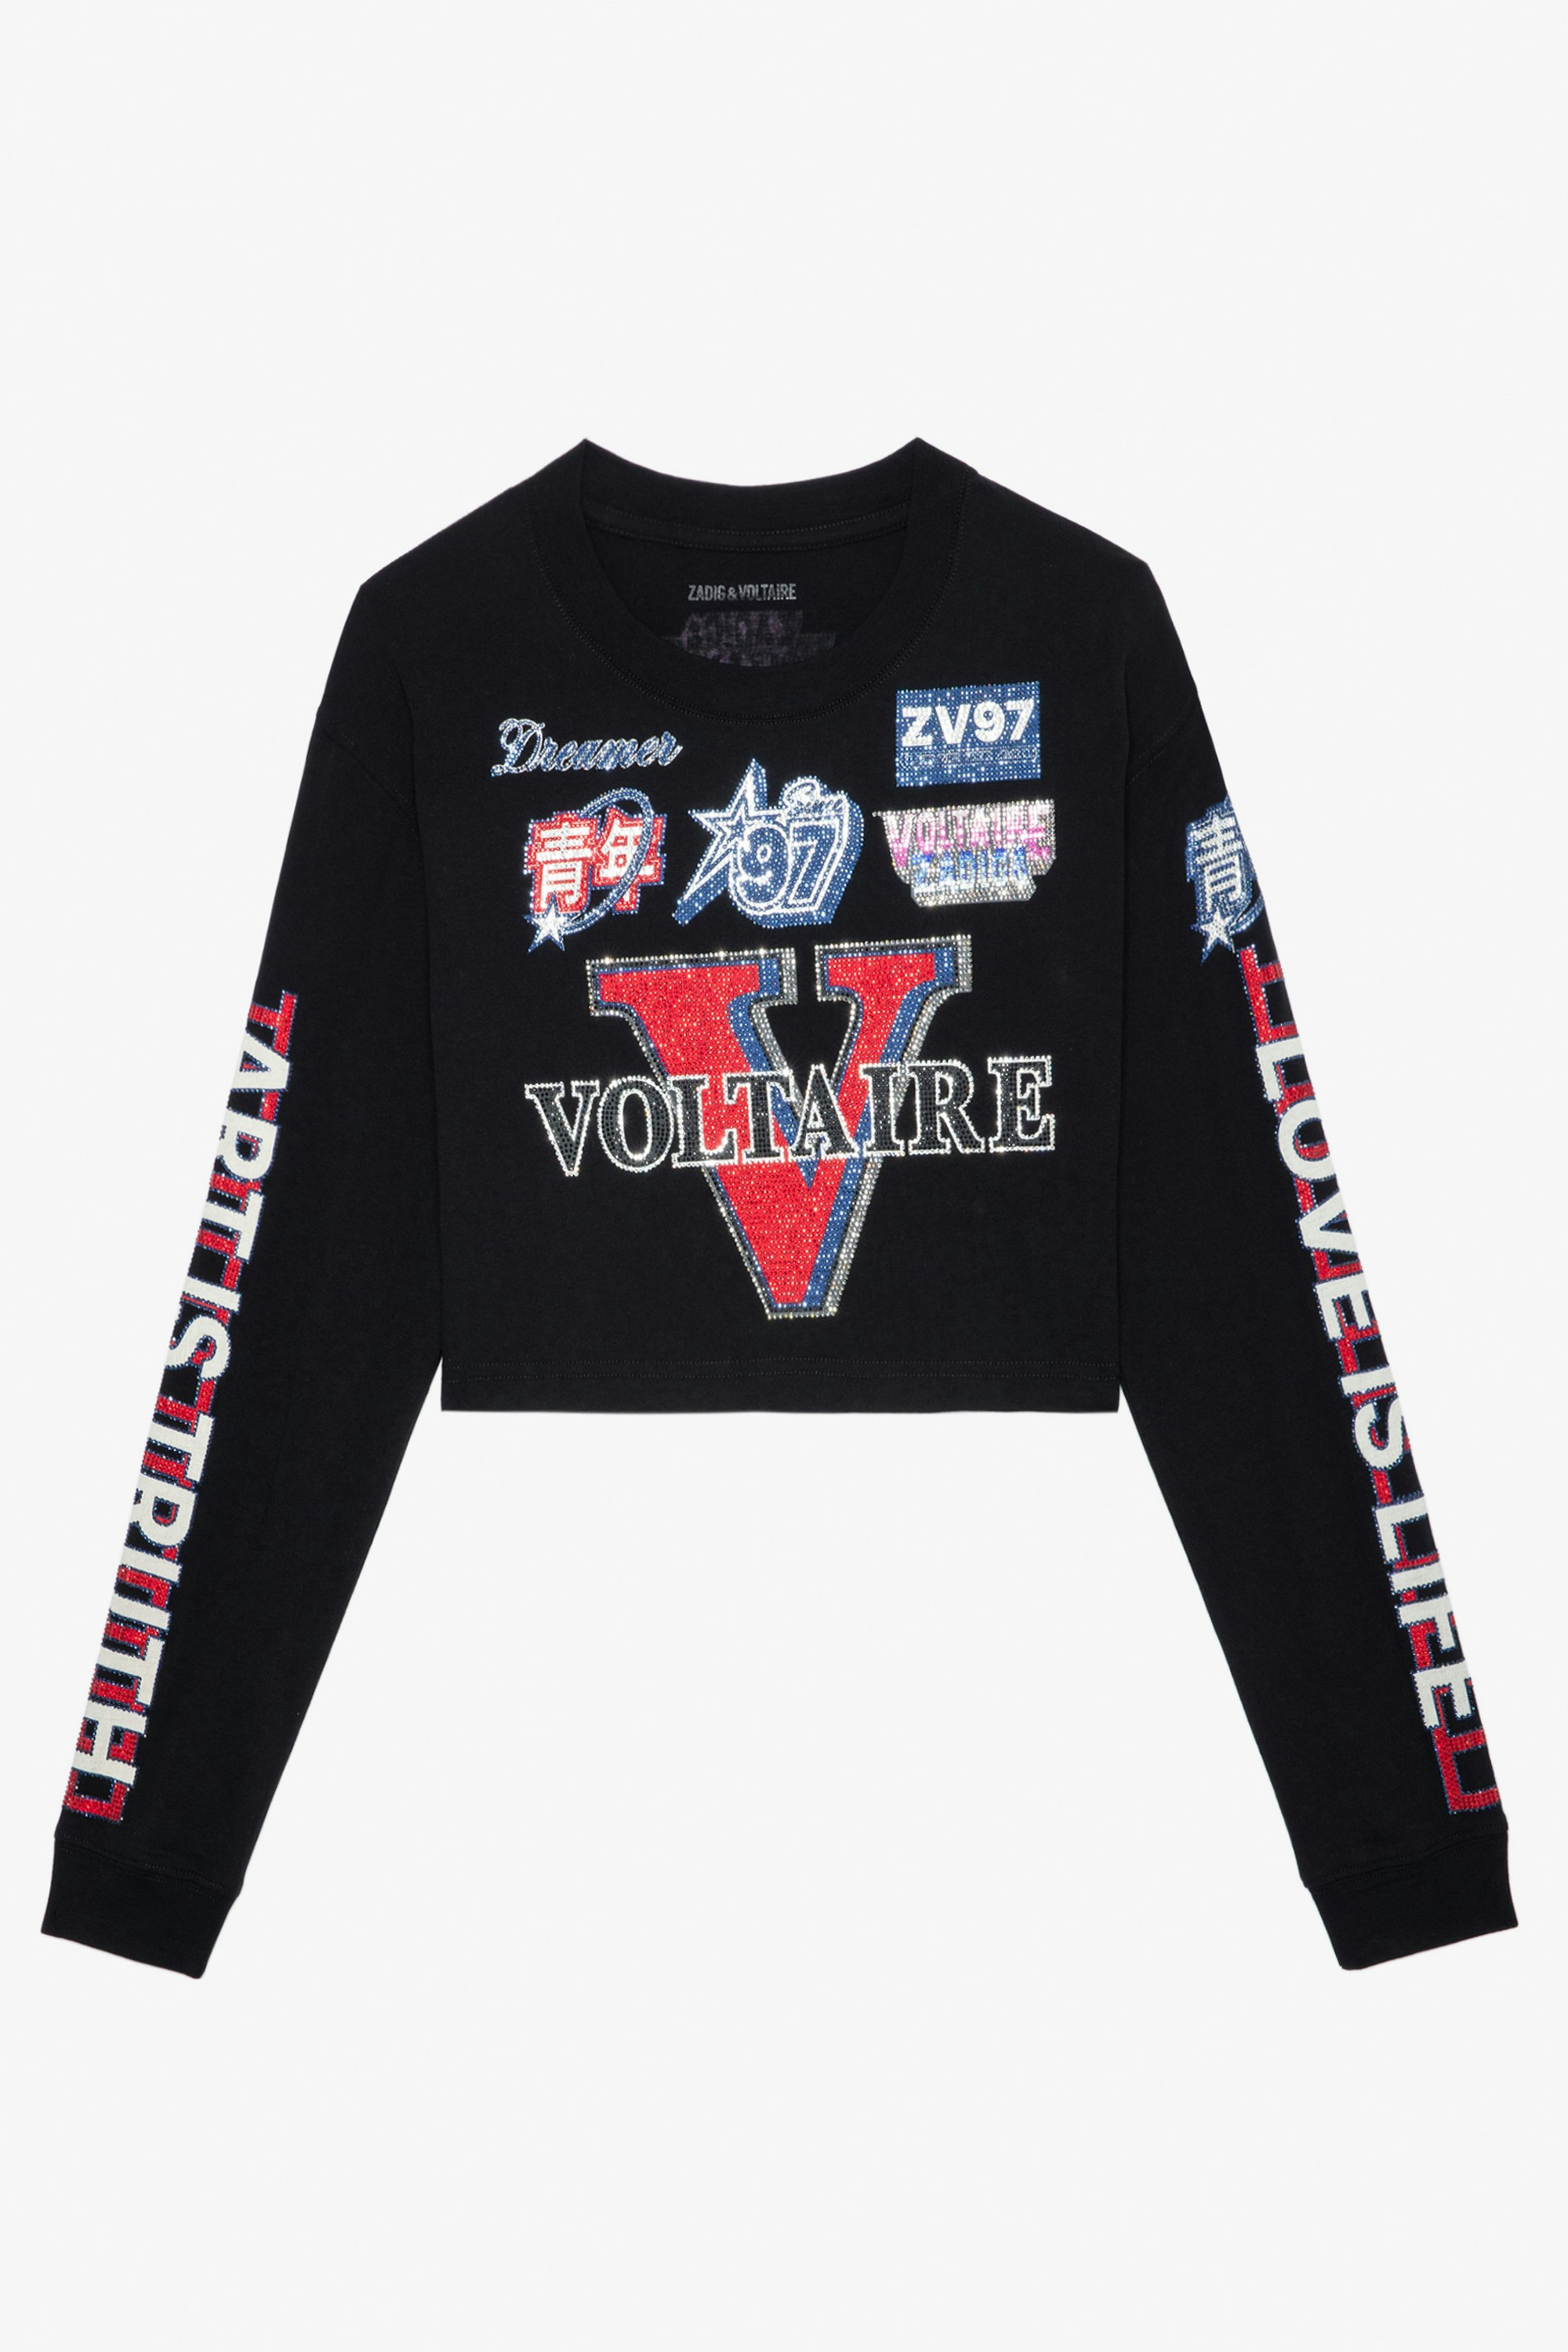 Camiseta Ioma Voltaire - Camiseta negra corta de algodón para mujer, de inspiración motera, manga larga, y con estampado de pines de Voltaire en strass.